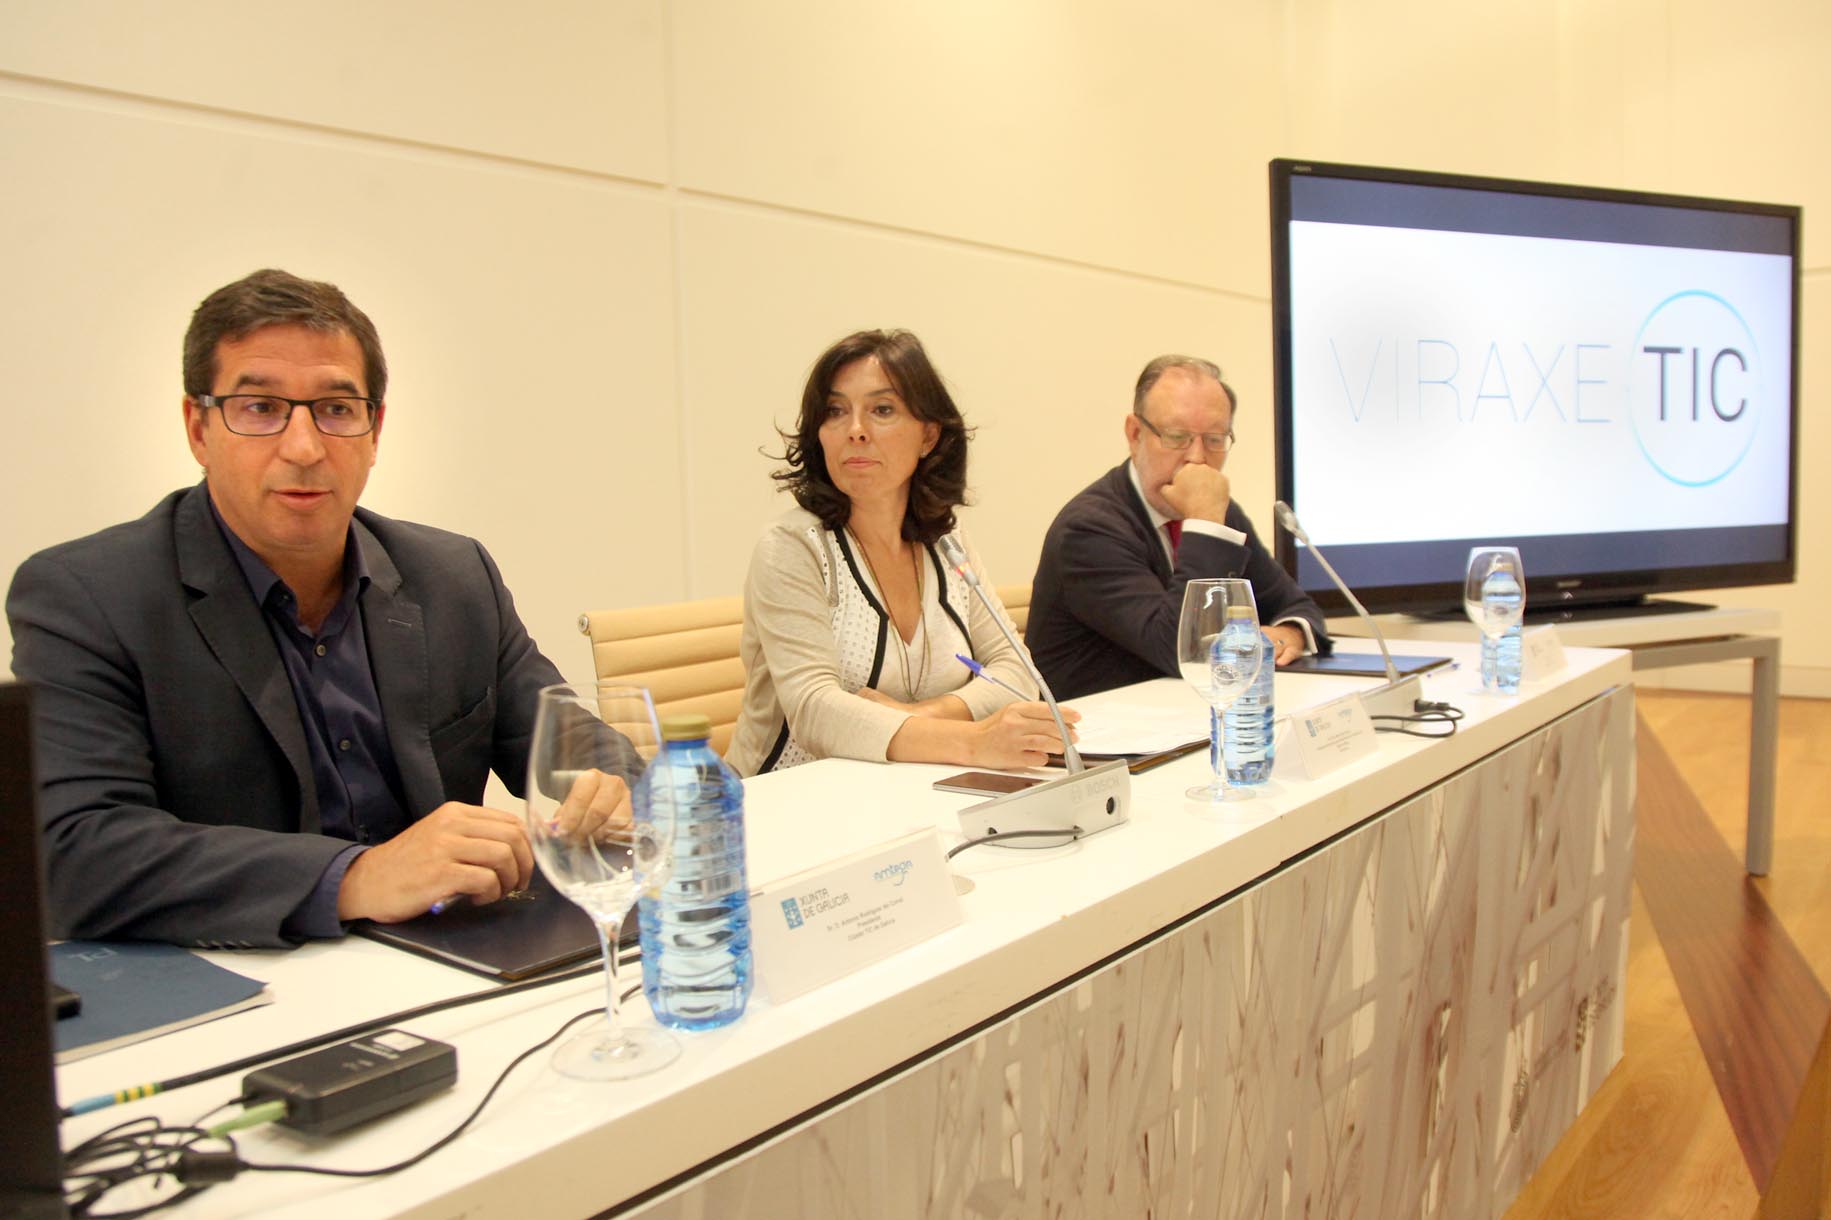 Presentación de "Viraxe TIC" con Antonio Rodríguez, Mar Pereira e Andrés Barbé